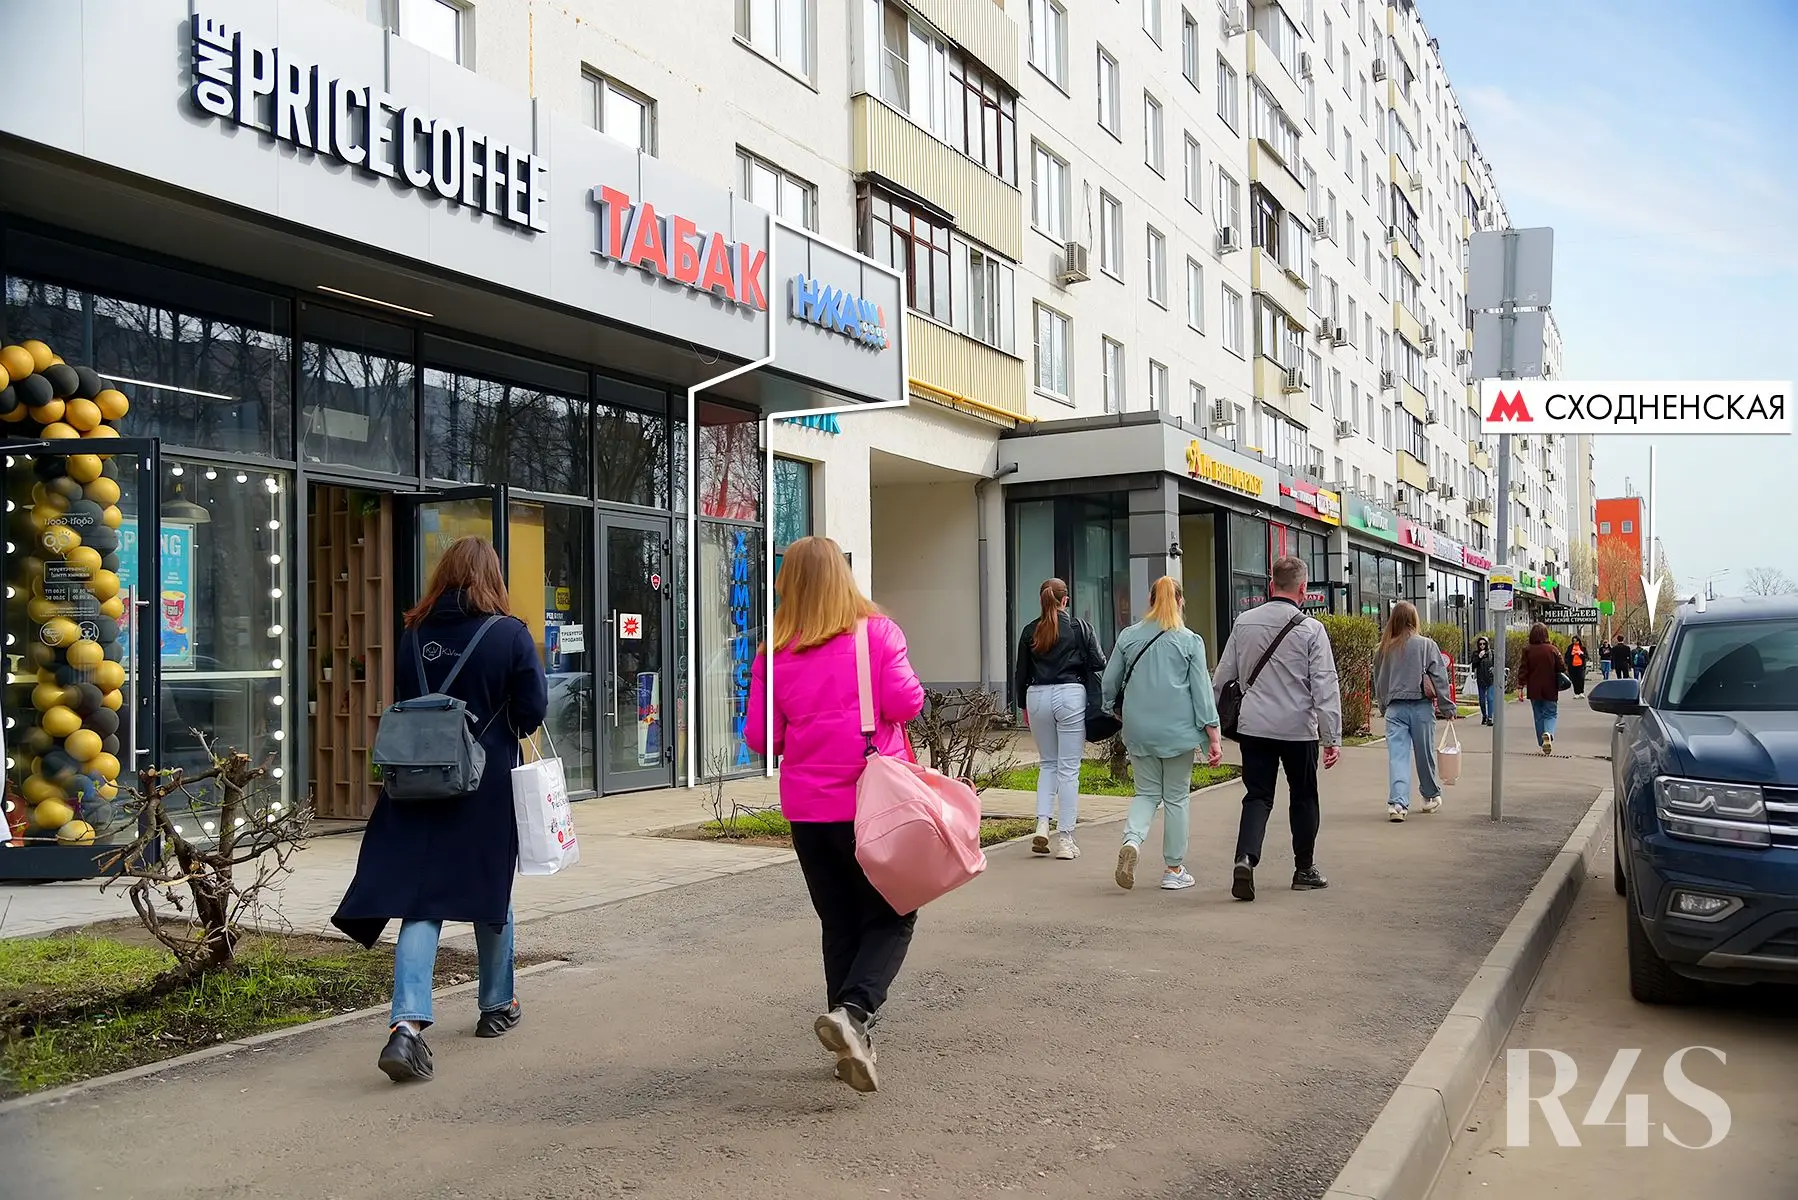 Продажа готового арендного бизнеса площадью 7 м2 в Москве: бульвар Яна Райниса, 2к1 R4S | Realty4Sale